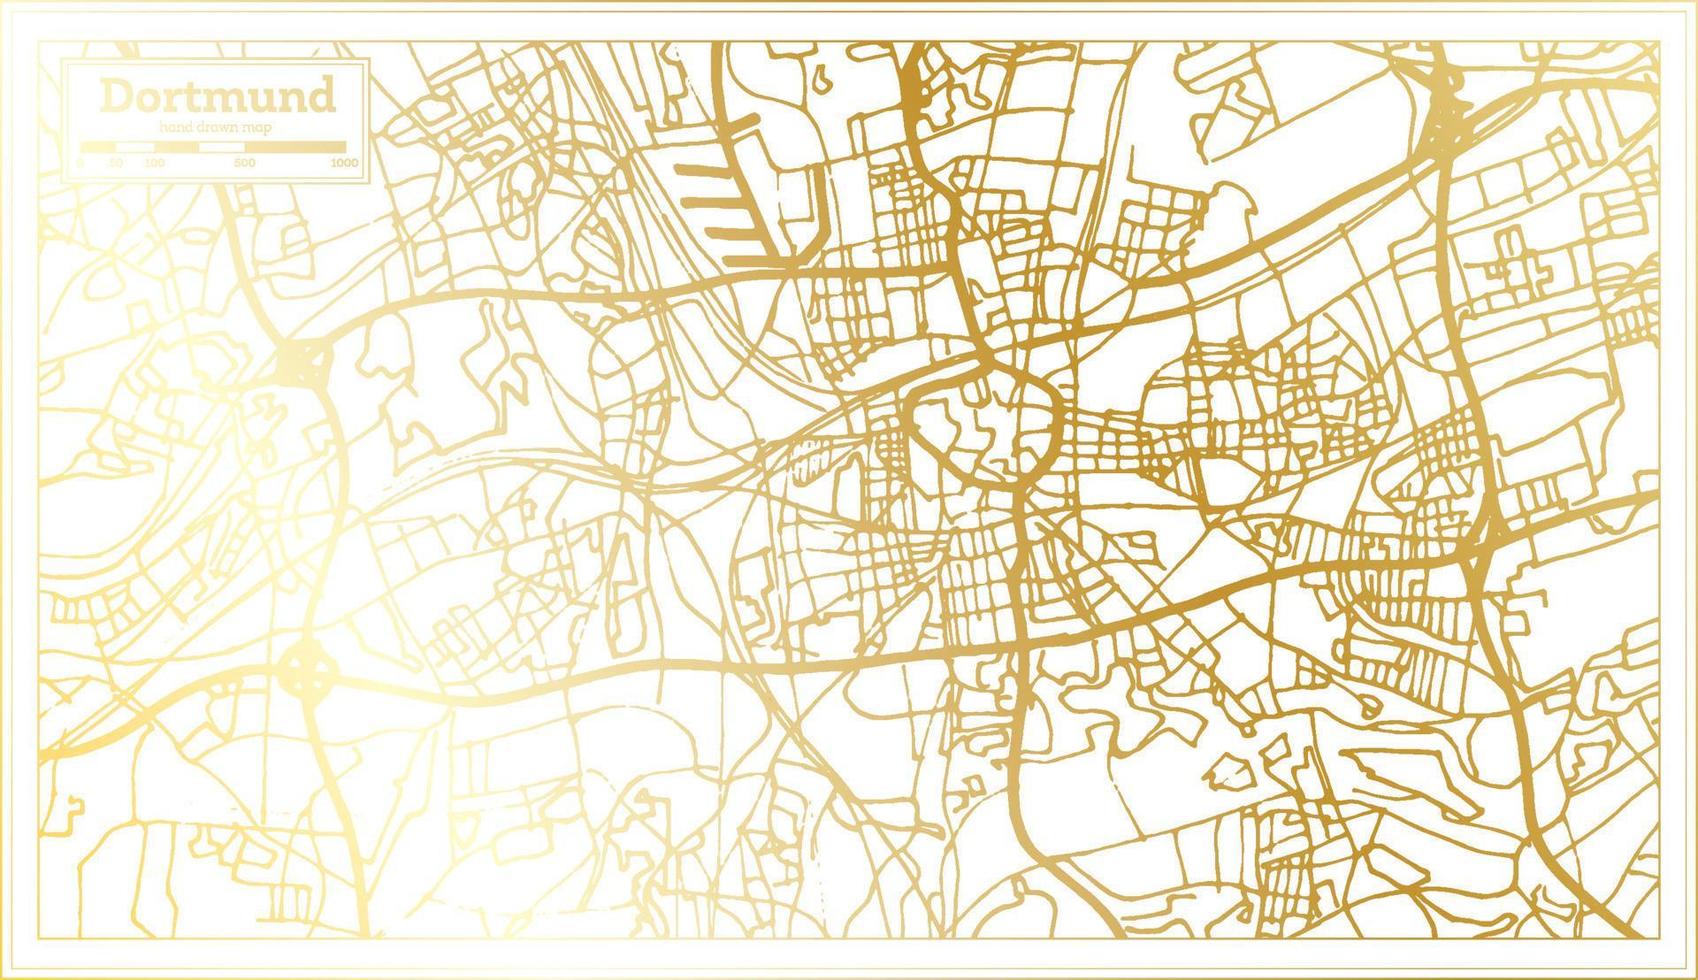 dortmund Duitsland stad kaart in retro stijl in gouden kleur. schets kaart. vector